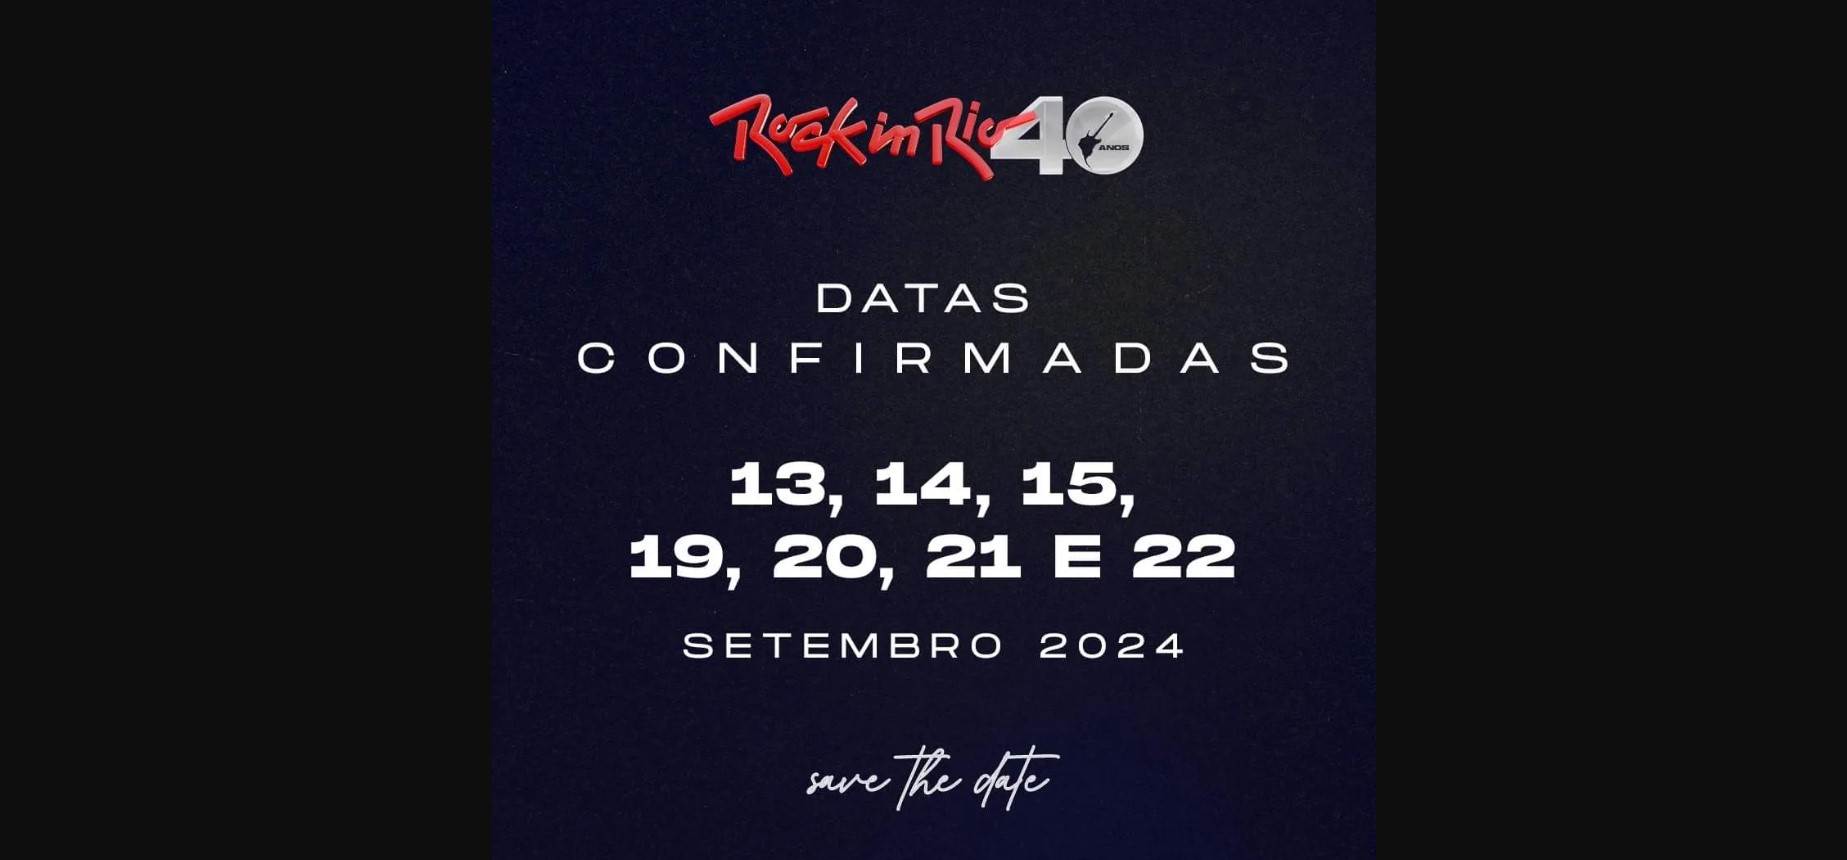 ROCK IN RIO confirma fechas de su edición 2024